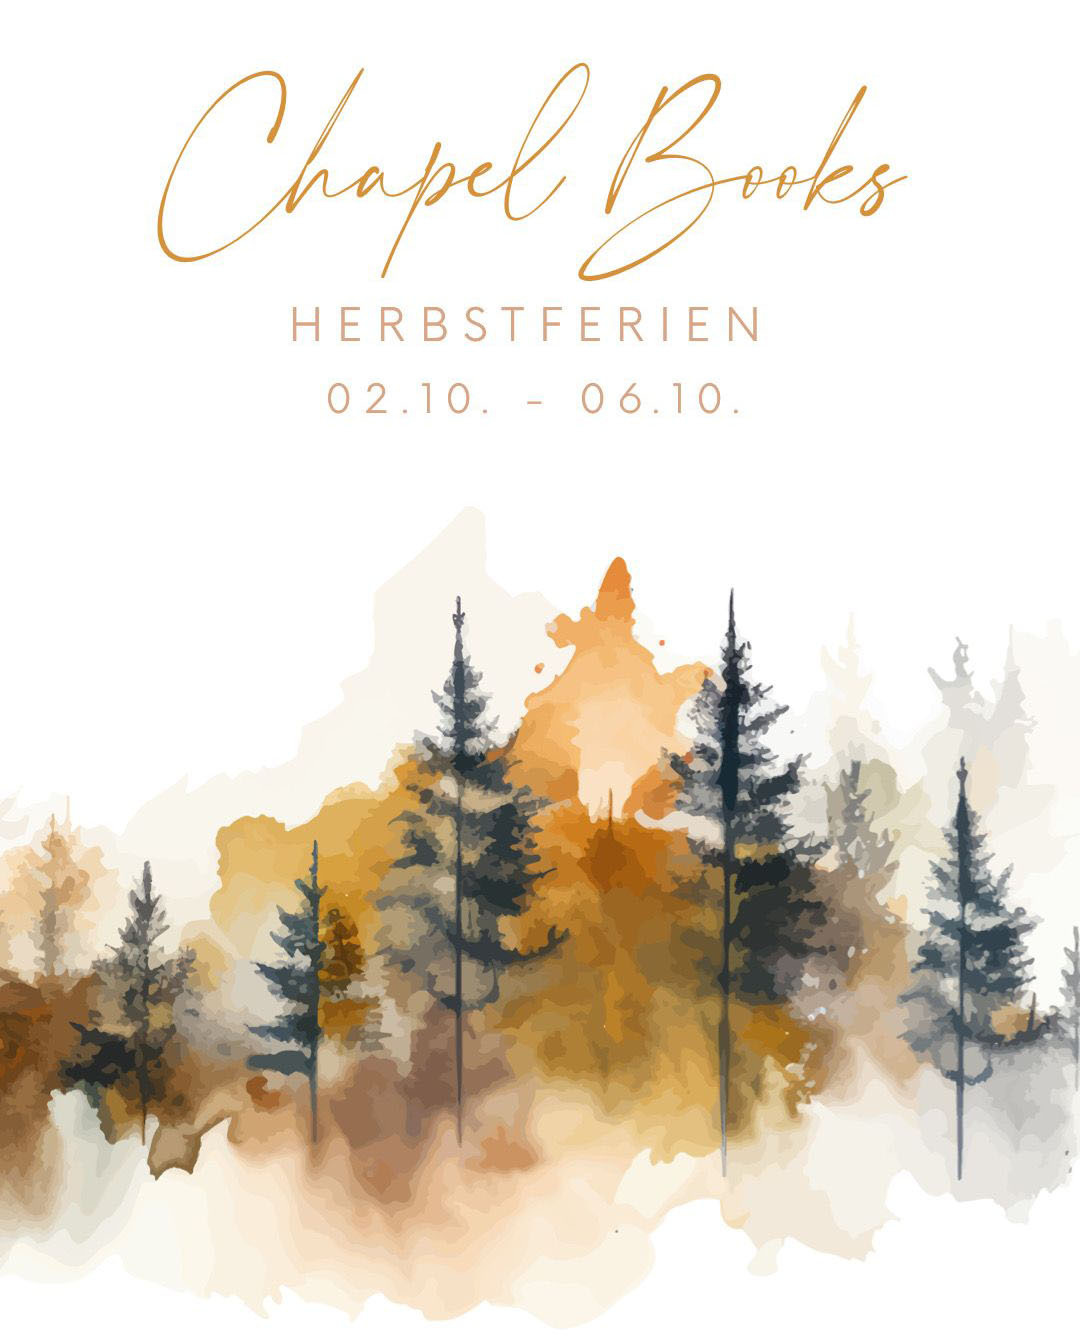 Herbstferien Chapel-books